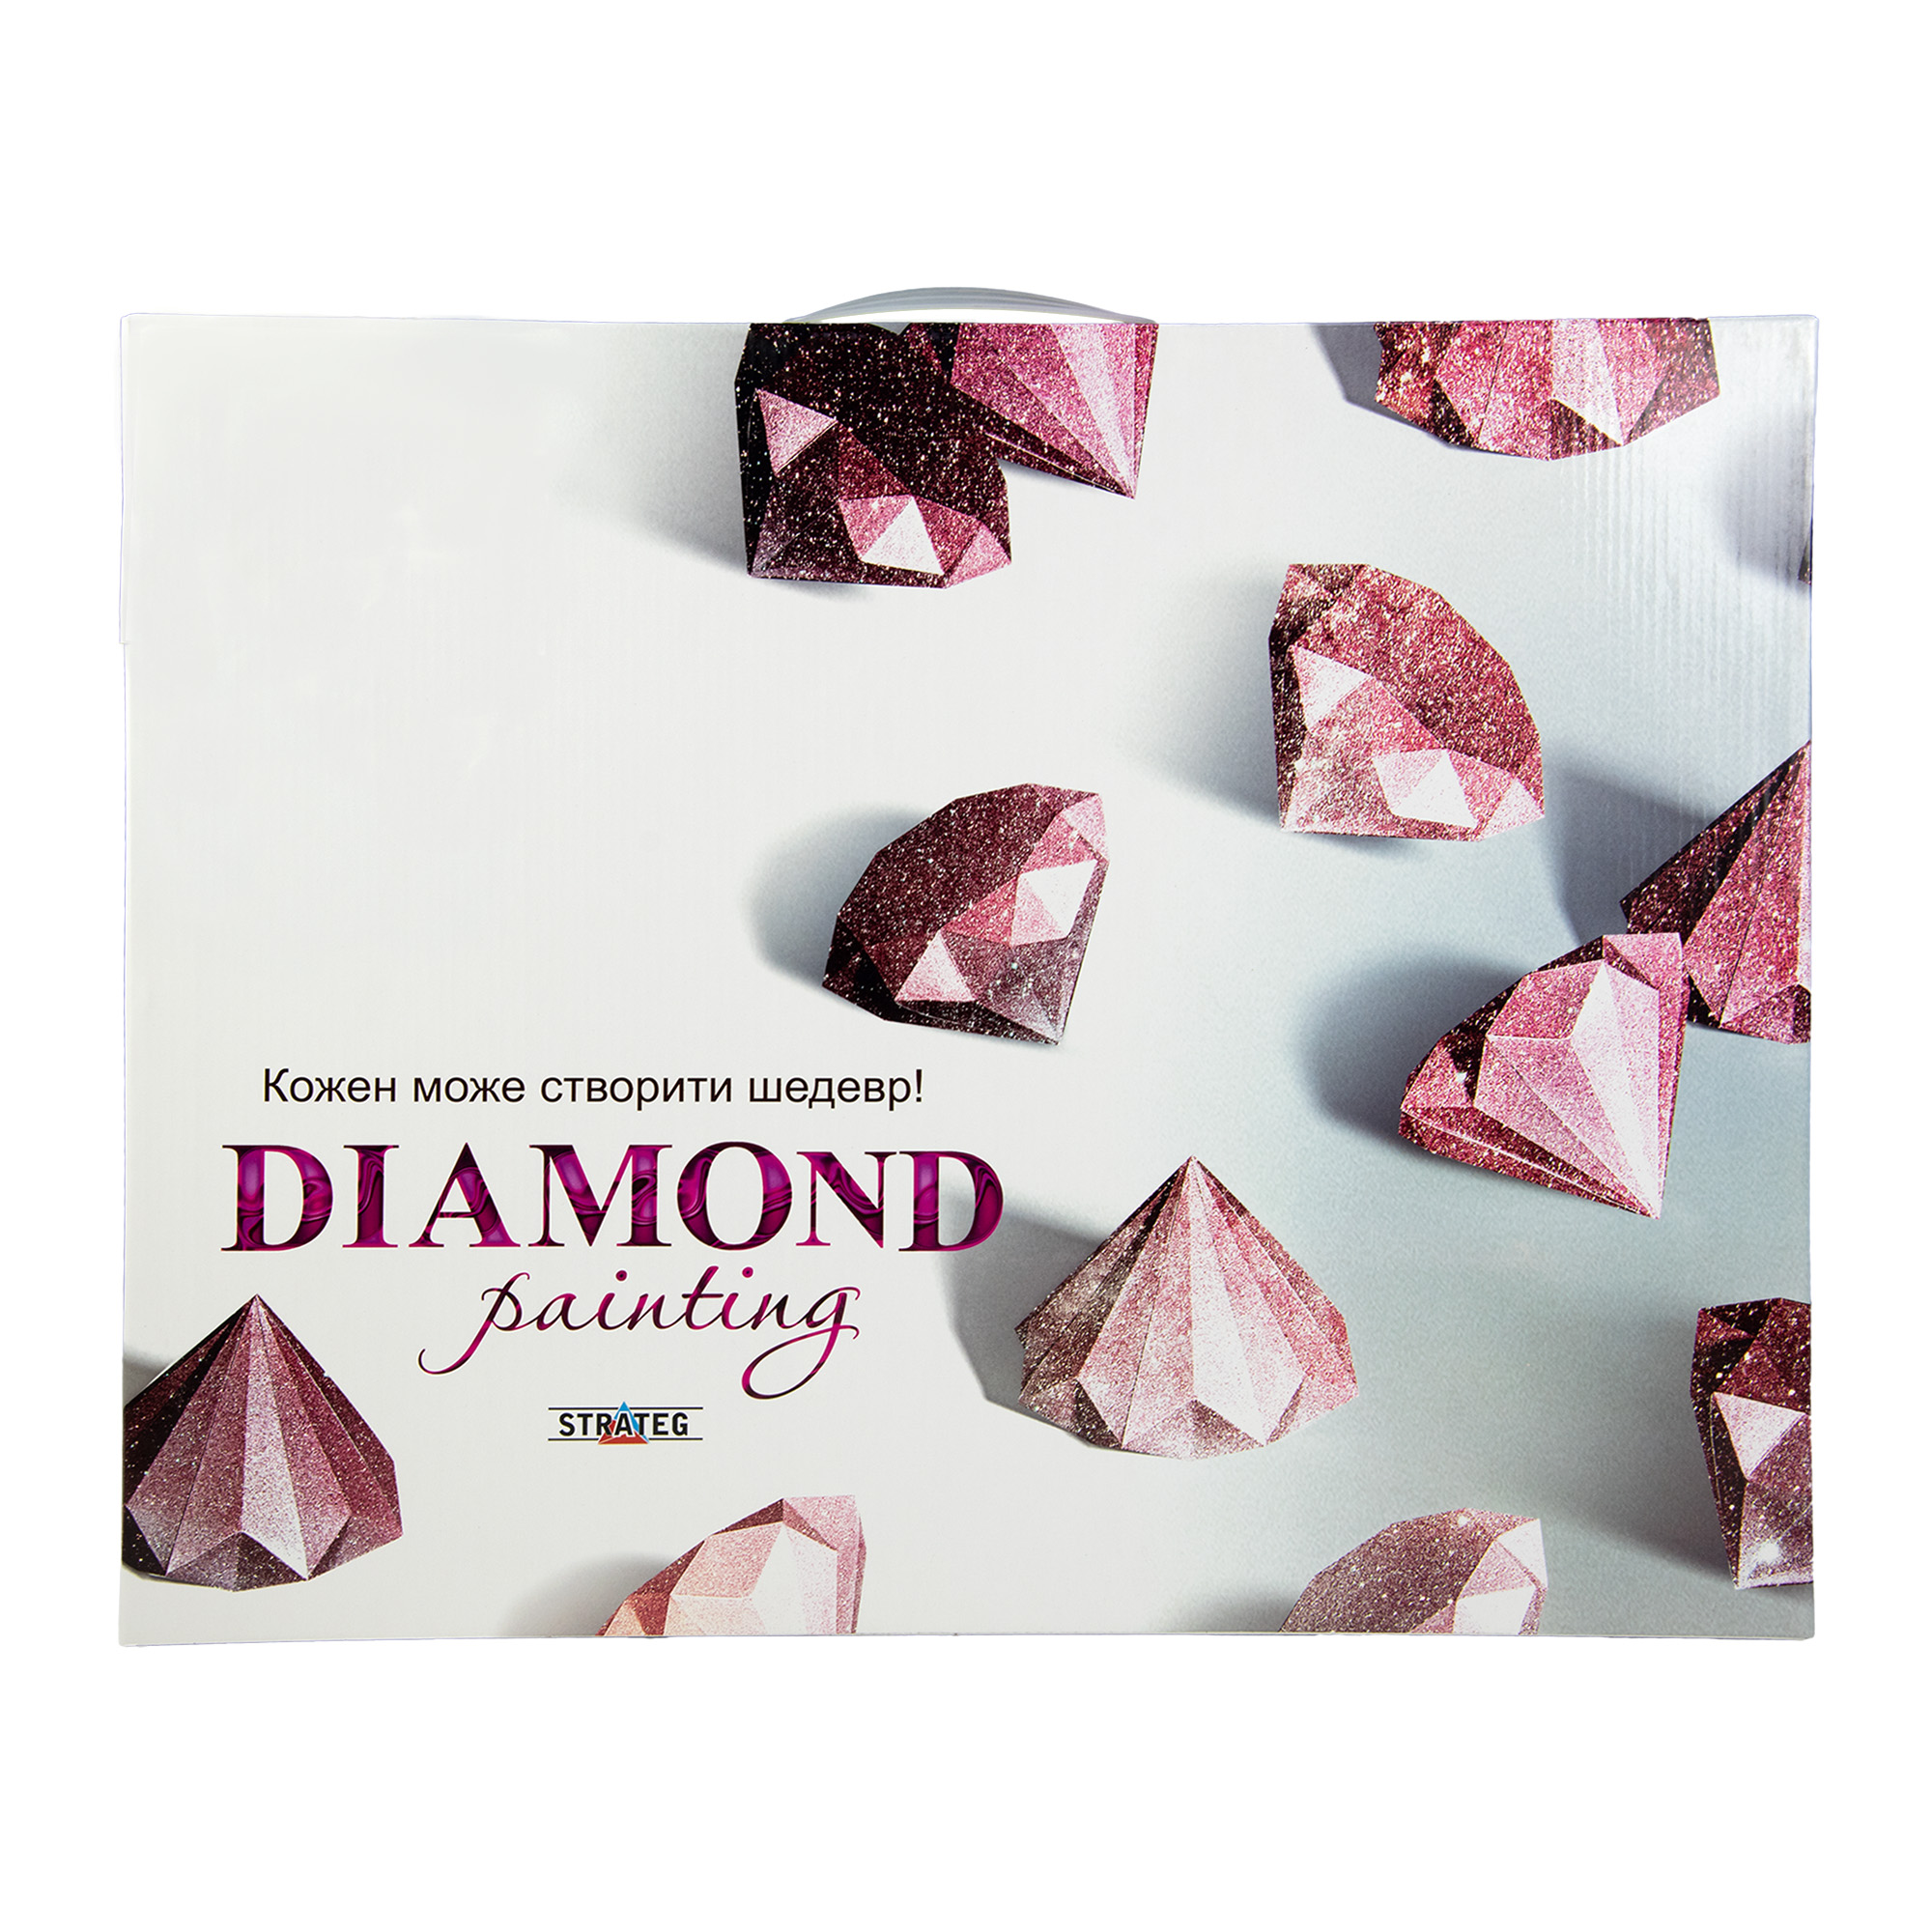 Diamantmosaik Strateg PREMIUM Rosen und Katzen Größe 40x50 cm (SK85996)